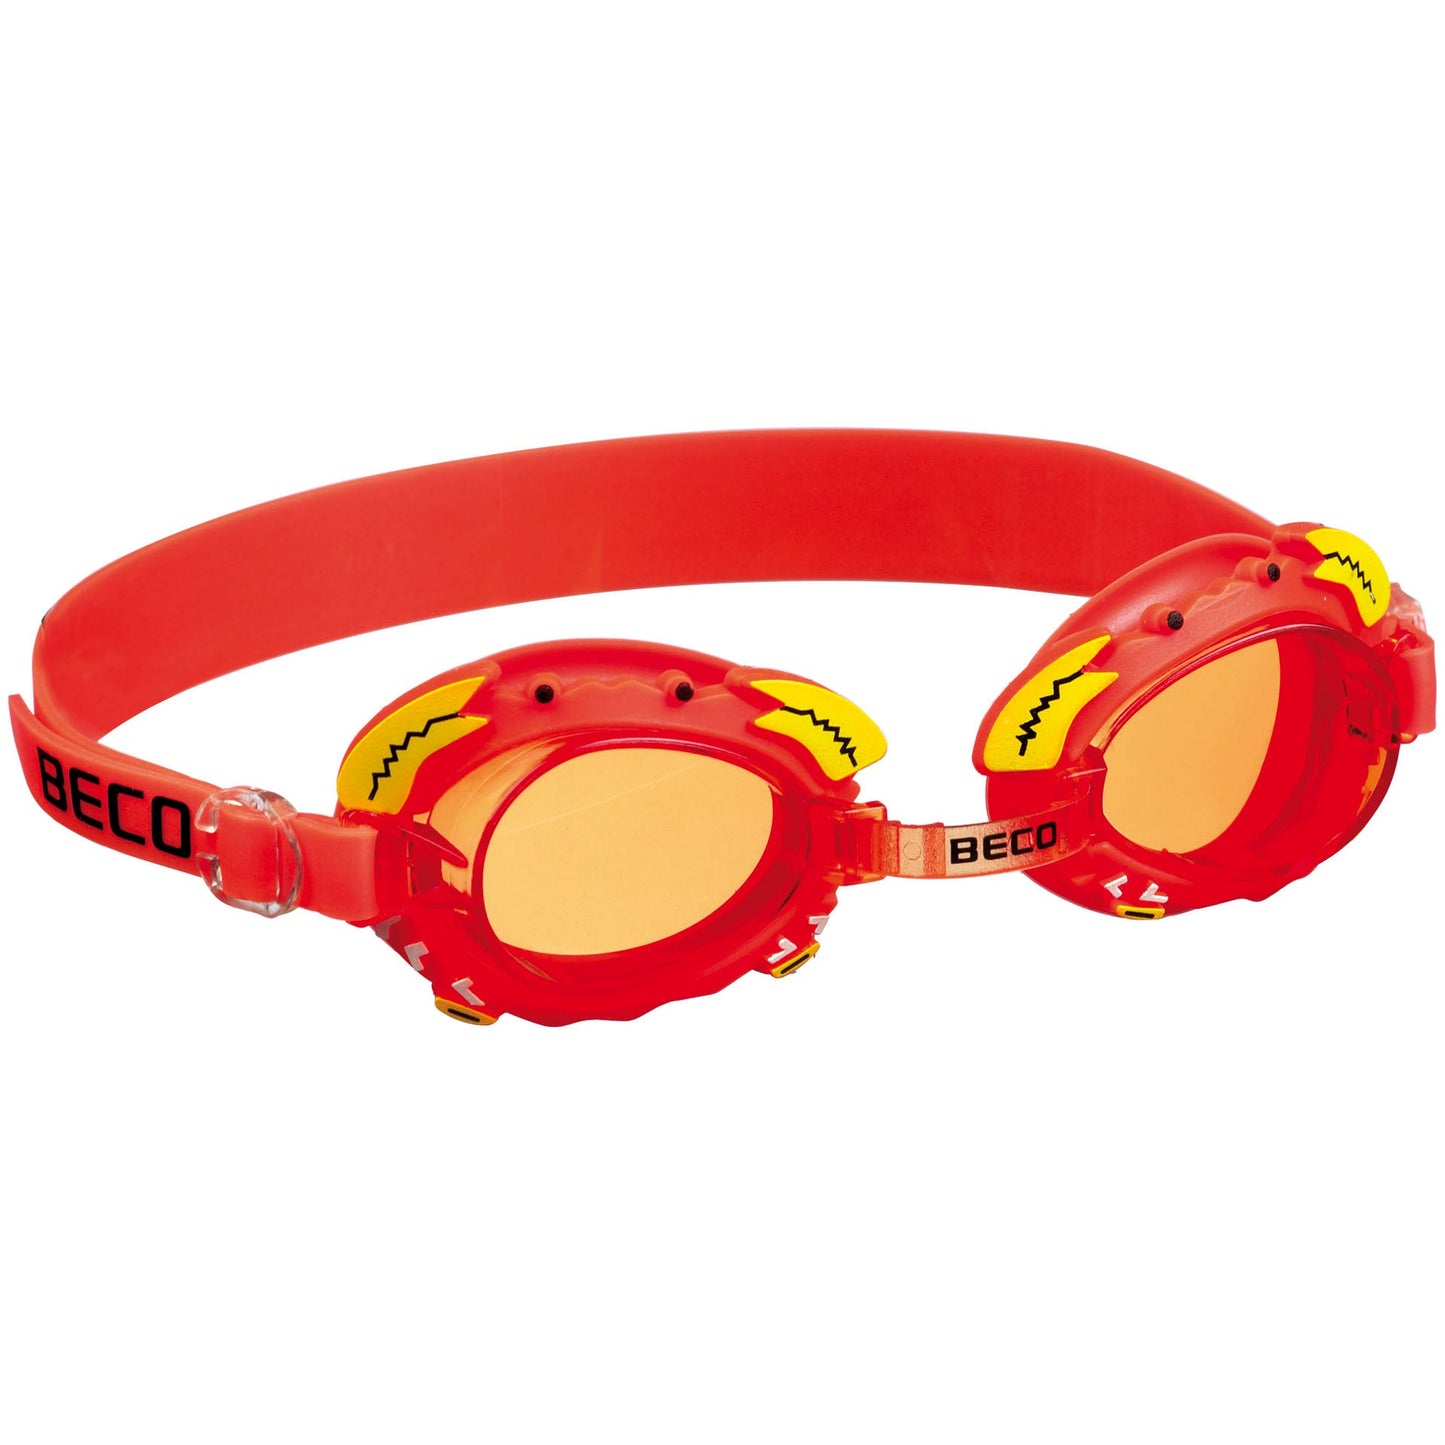 BECO "Palma" svømmebriller til børn 4 år+ - Rød